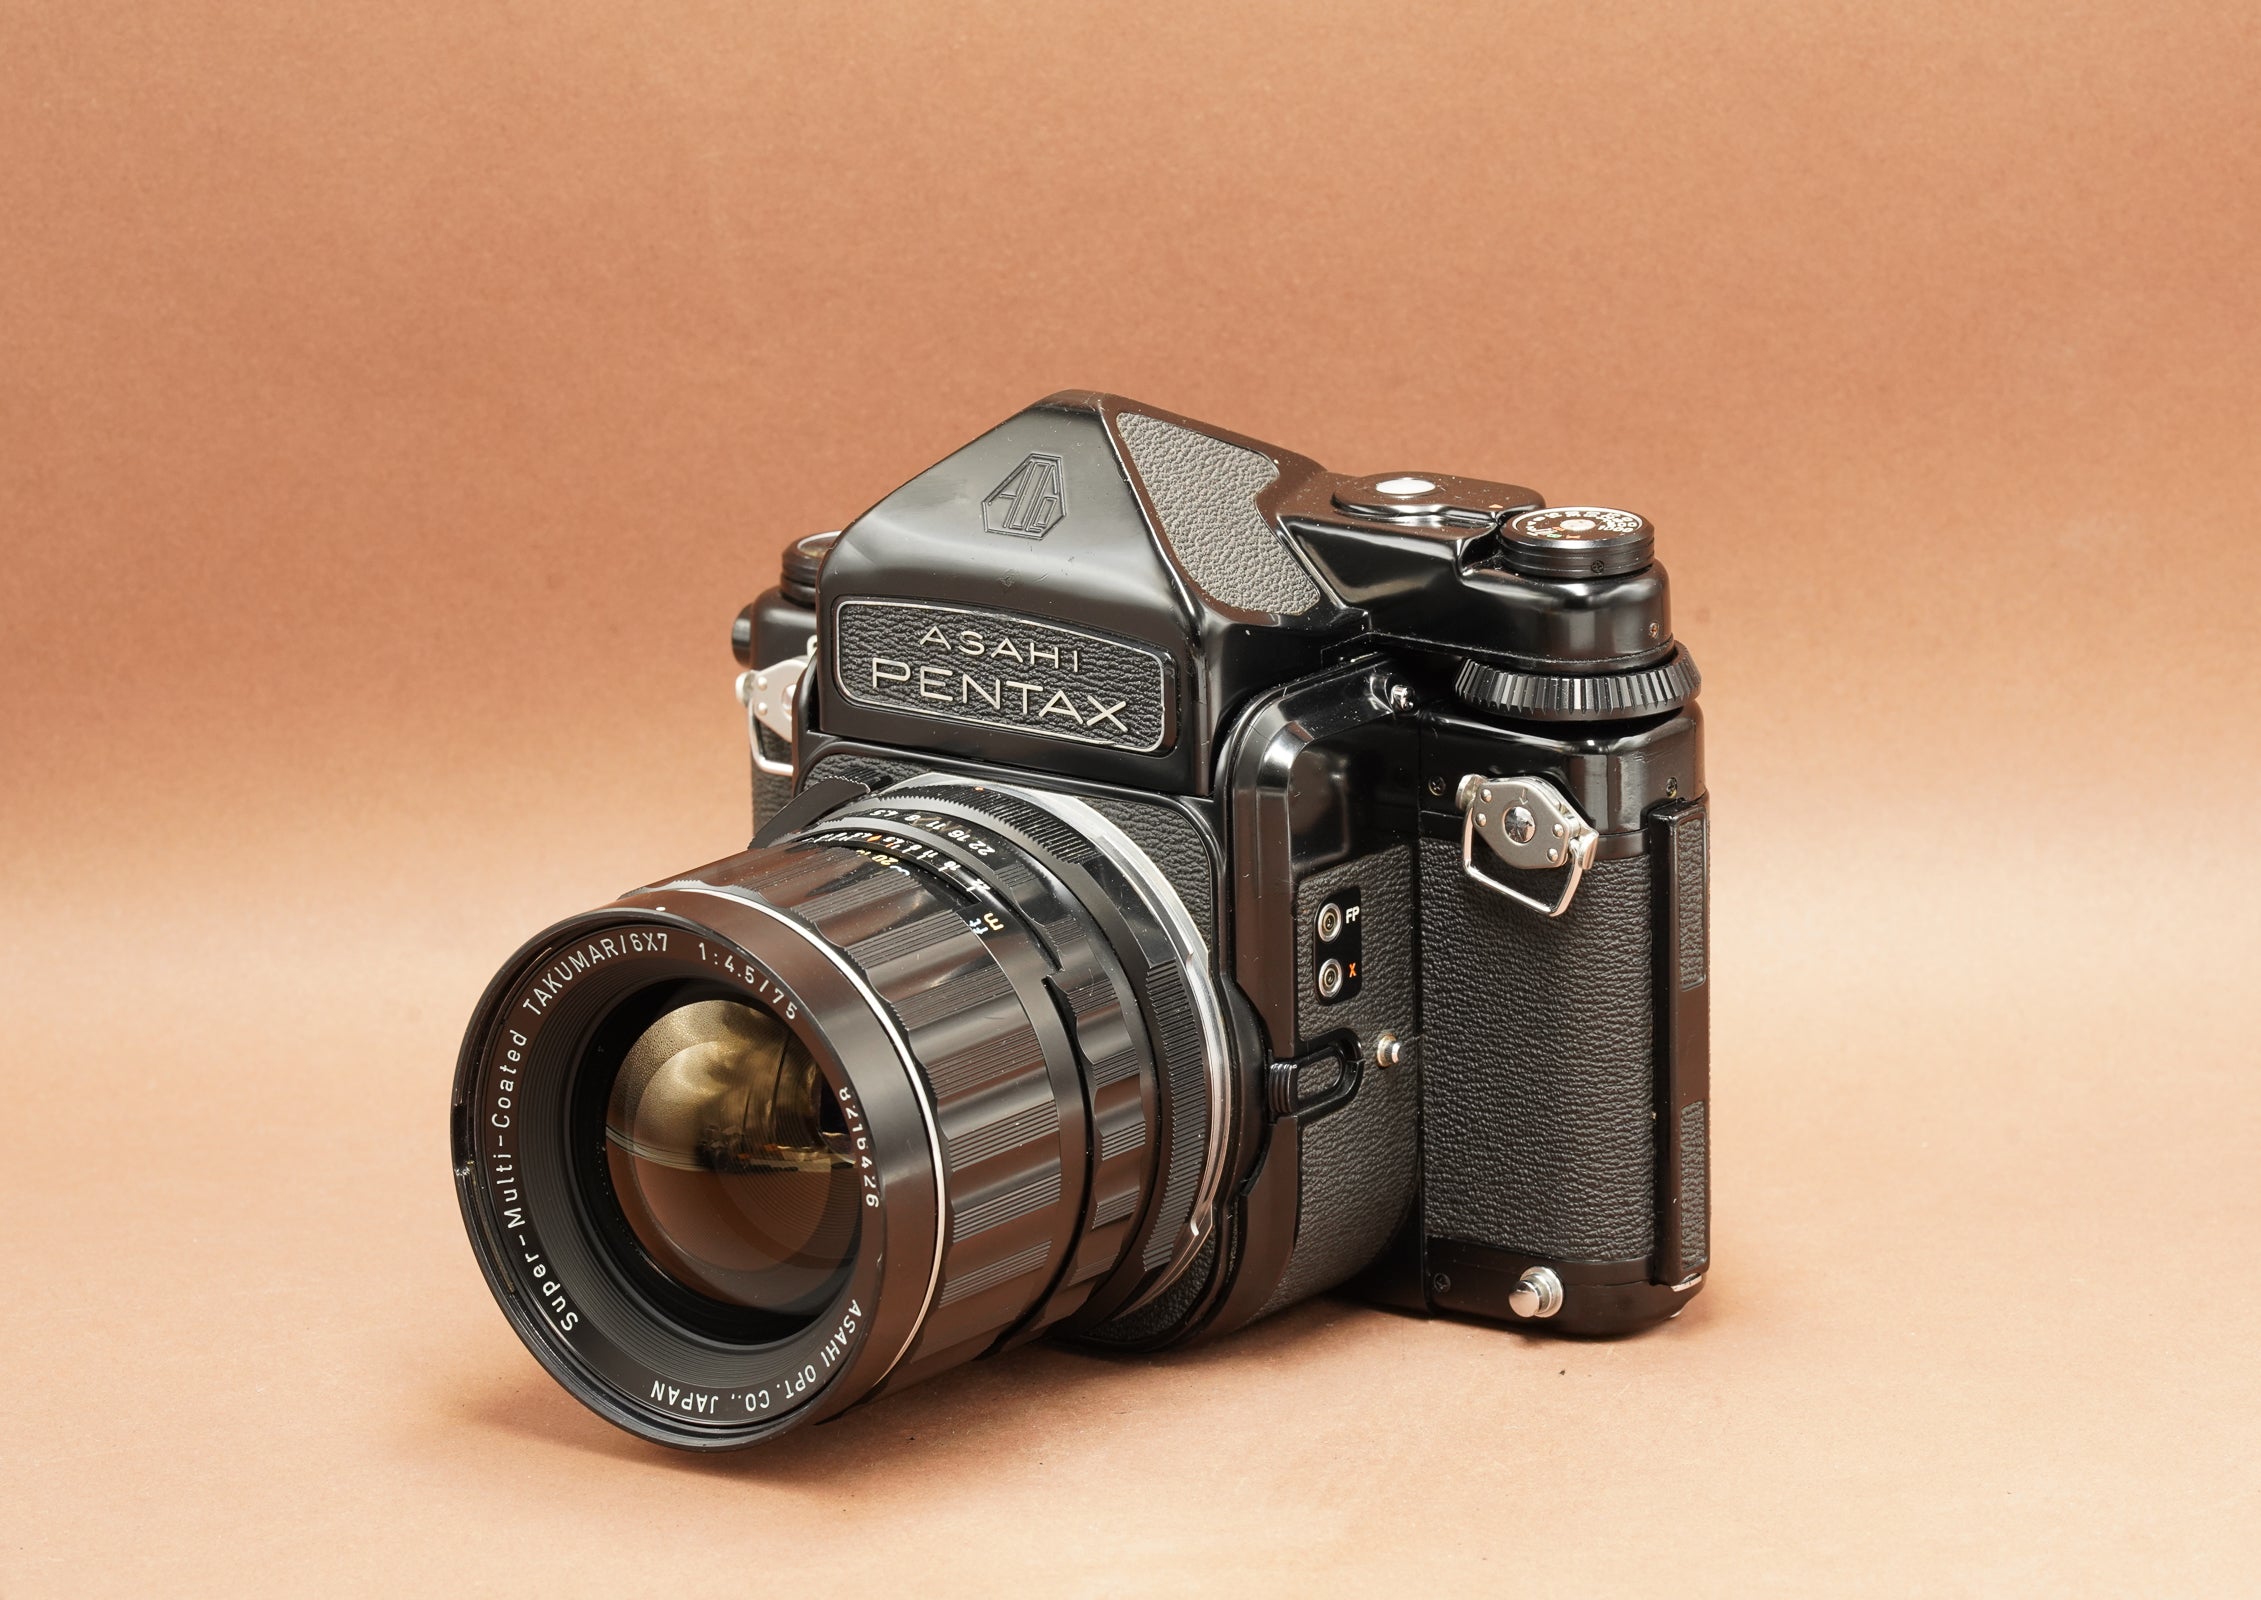 Pentax 6x7, 75mm f4.5 lens & metered viewfinder